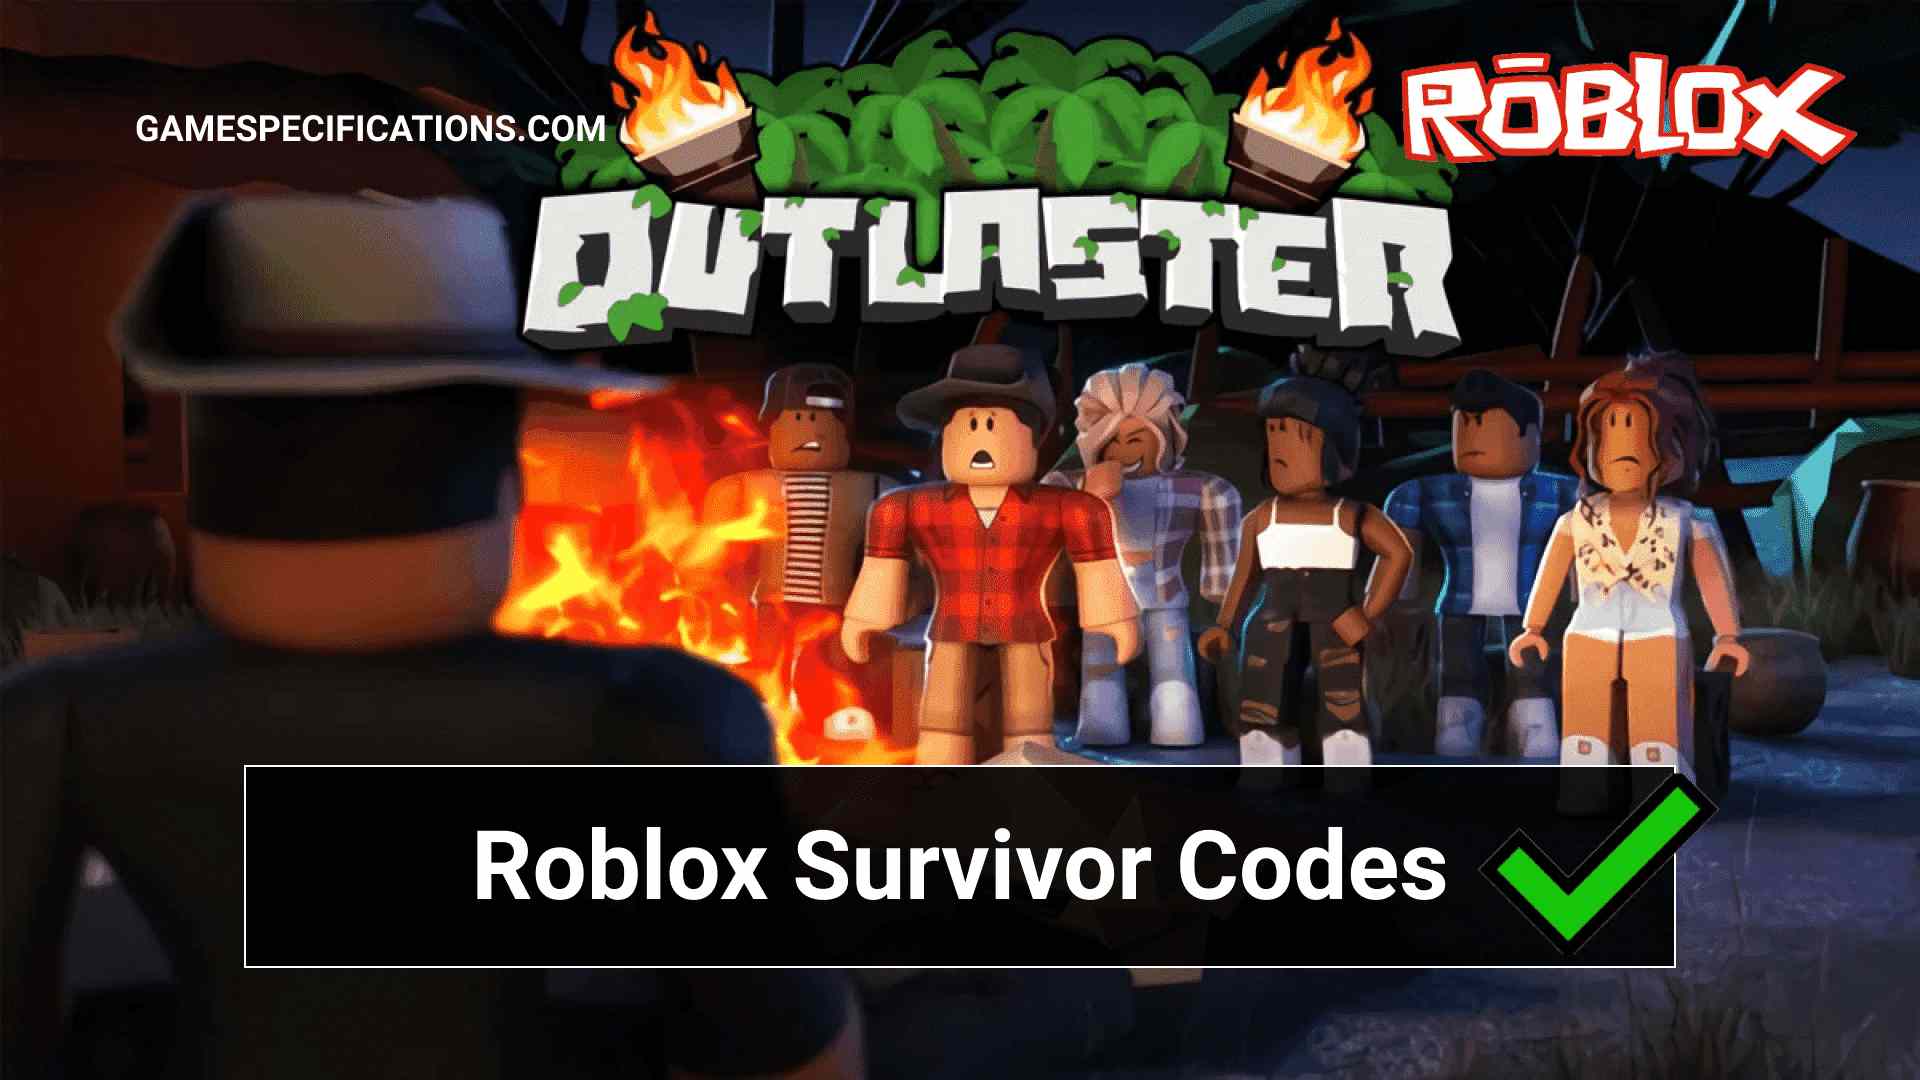 Roblox Survivor Codes July 2021 Game Specifications - codegos do jogo survivor roblox